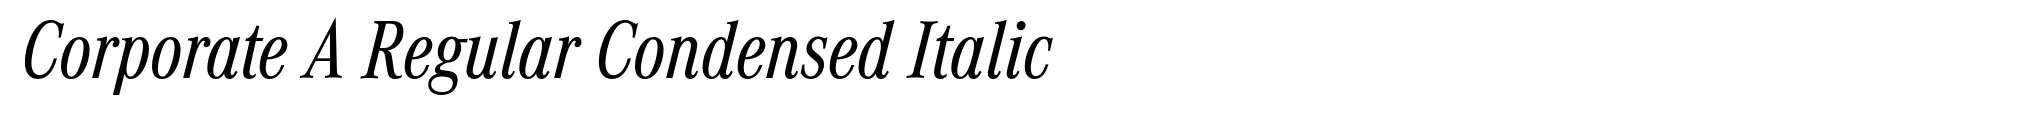 Corporate A Regular Condensed Italic image